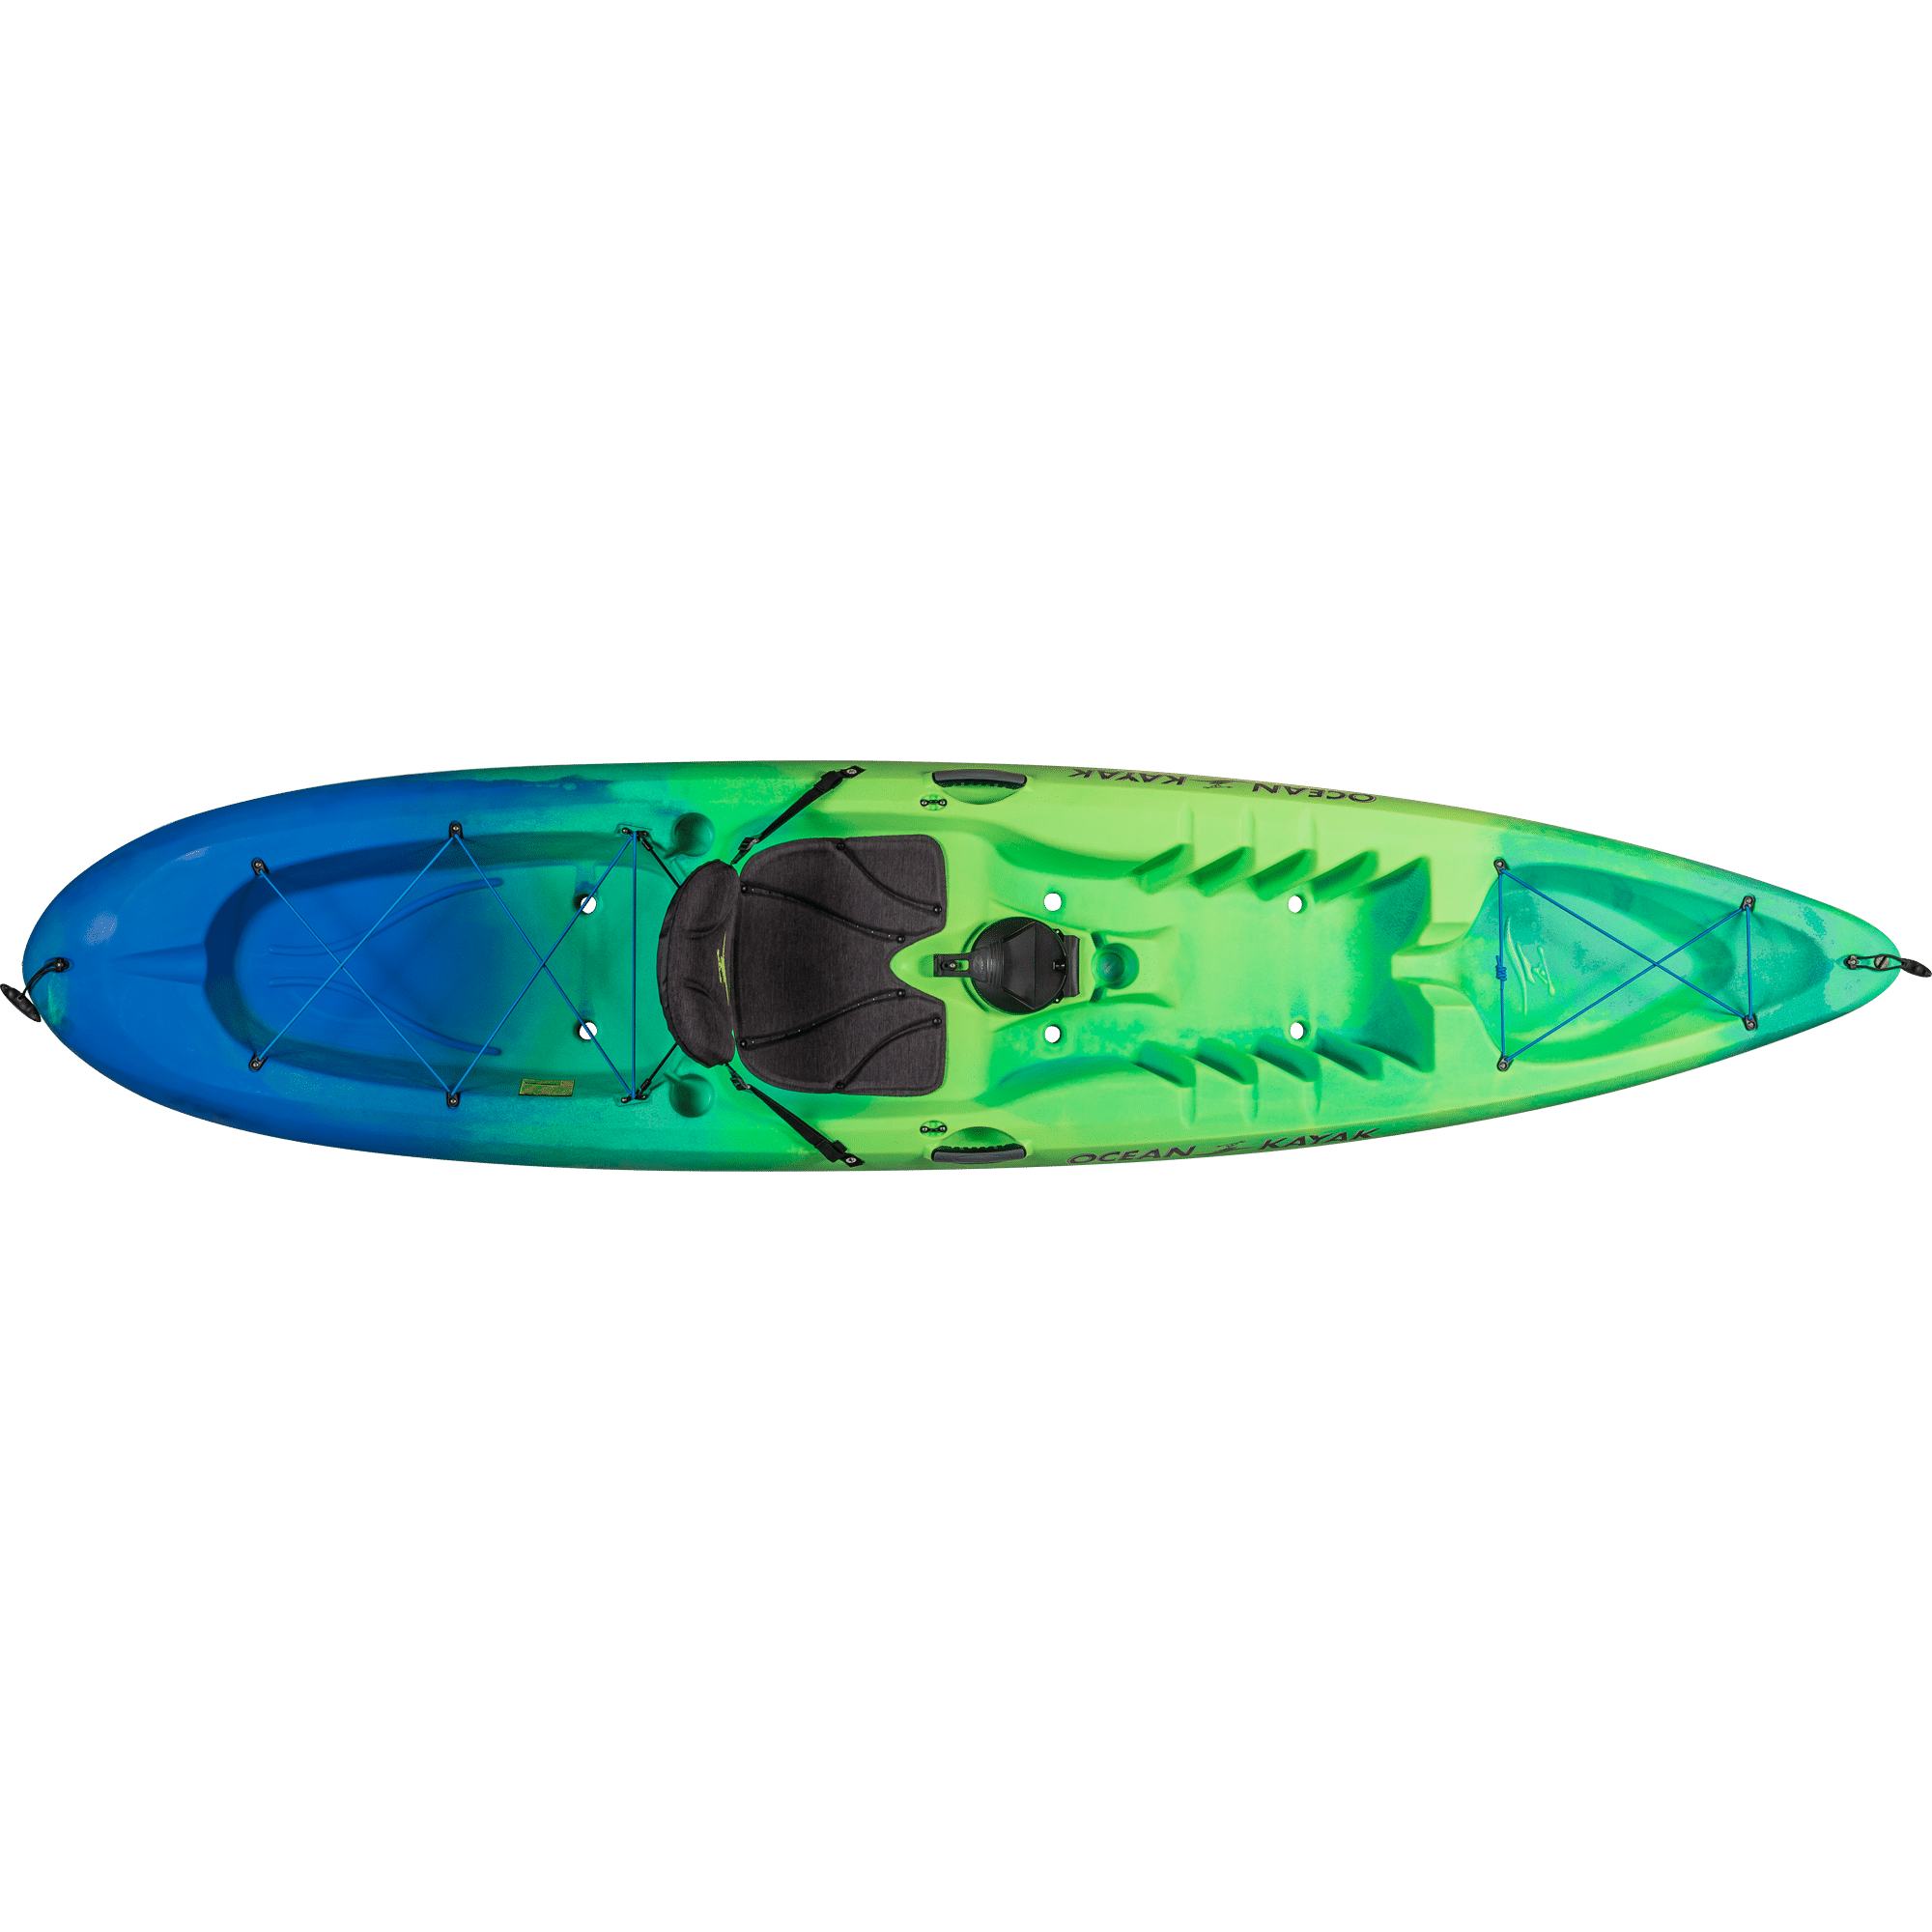 Used Kayaks For Sale Craigslist Nj - Kayak Explorer